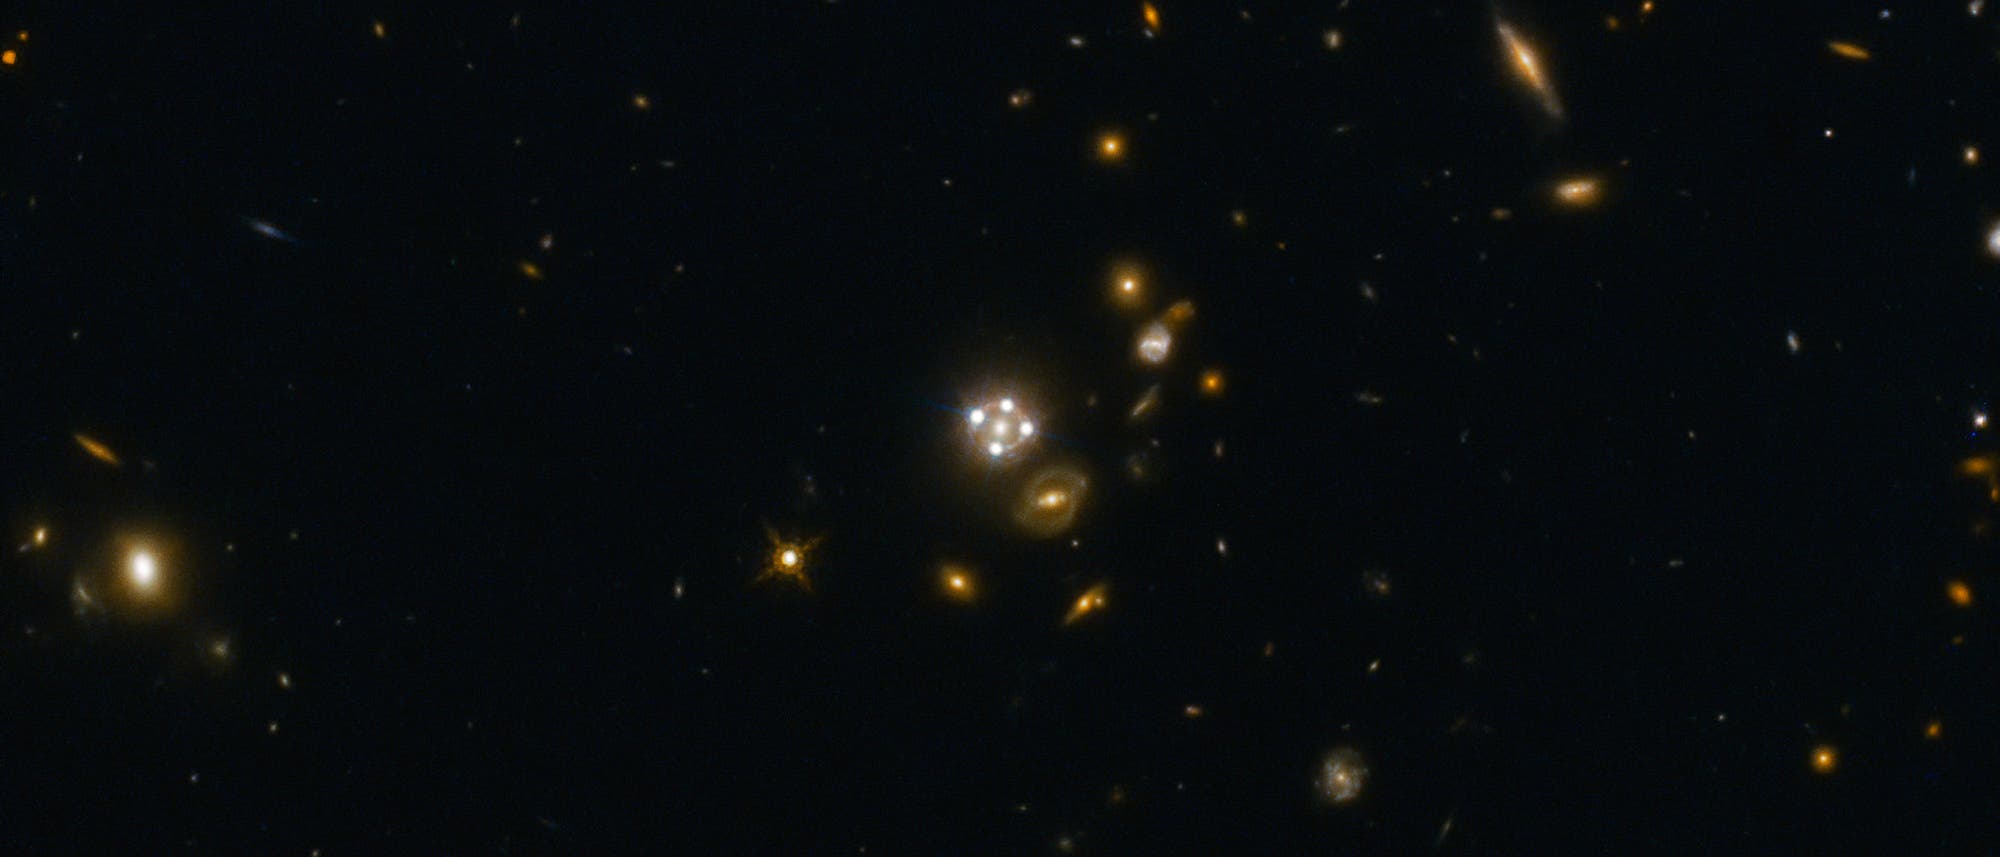 Ein besonders schönes Gravitationslinsensystem ist HE0435-1223 im Sternbild Eridanus.